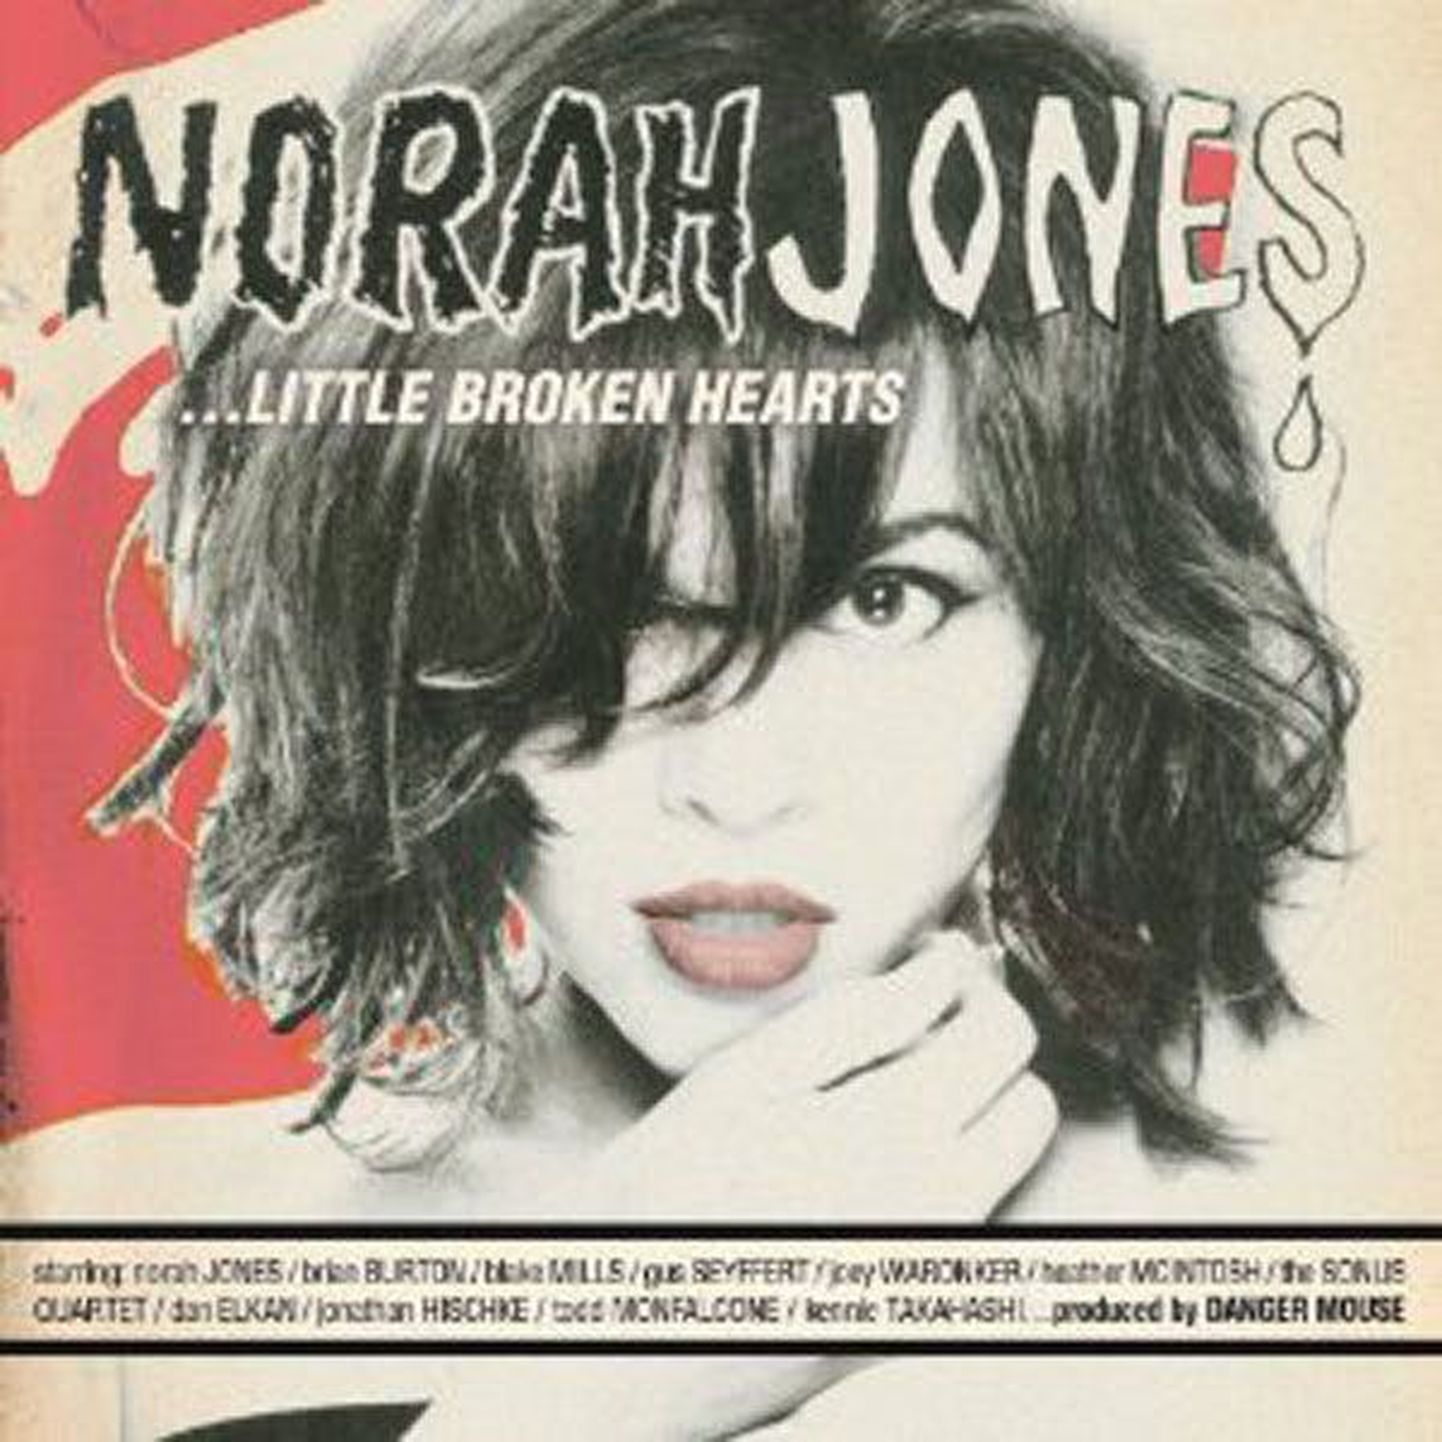 Norah Jones
Little Broken Hearts (Blue Note)